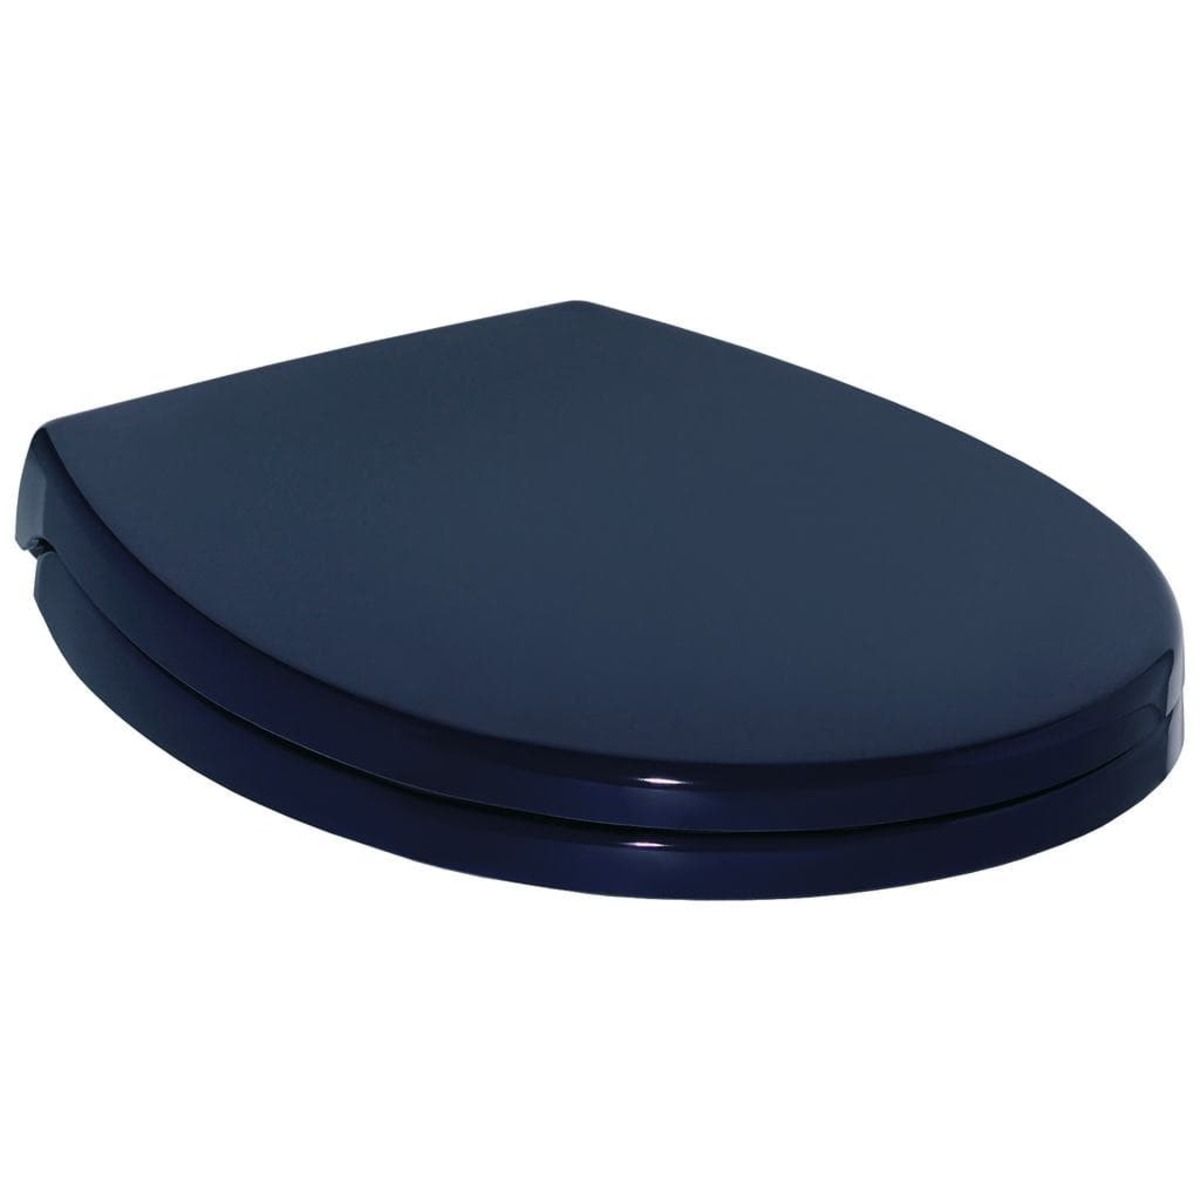 Wc prkénko Ideal Standard Contour 21 duroplast modrá S409236 - Siko - koupelny - kuchyně